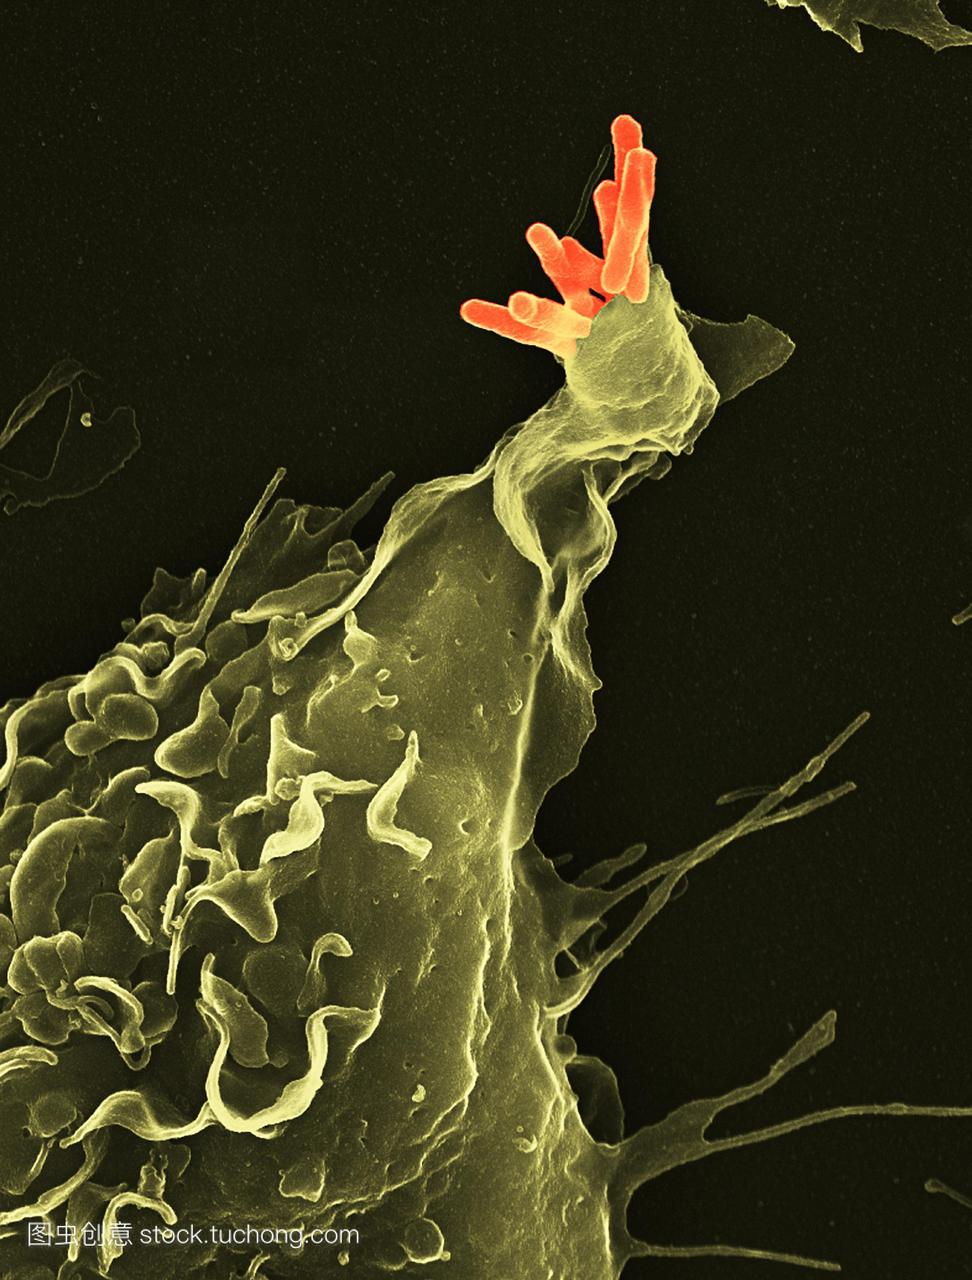 巨噬细胞吞噬结核疫苗。一种巨噬细胞白细胞绿